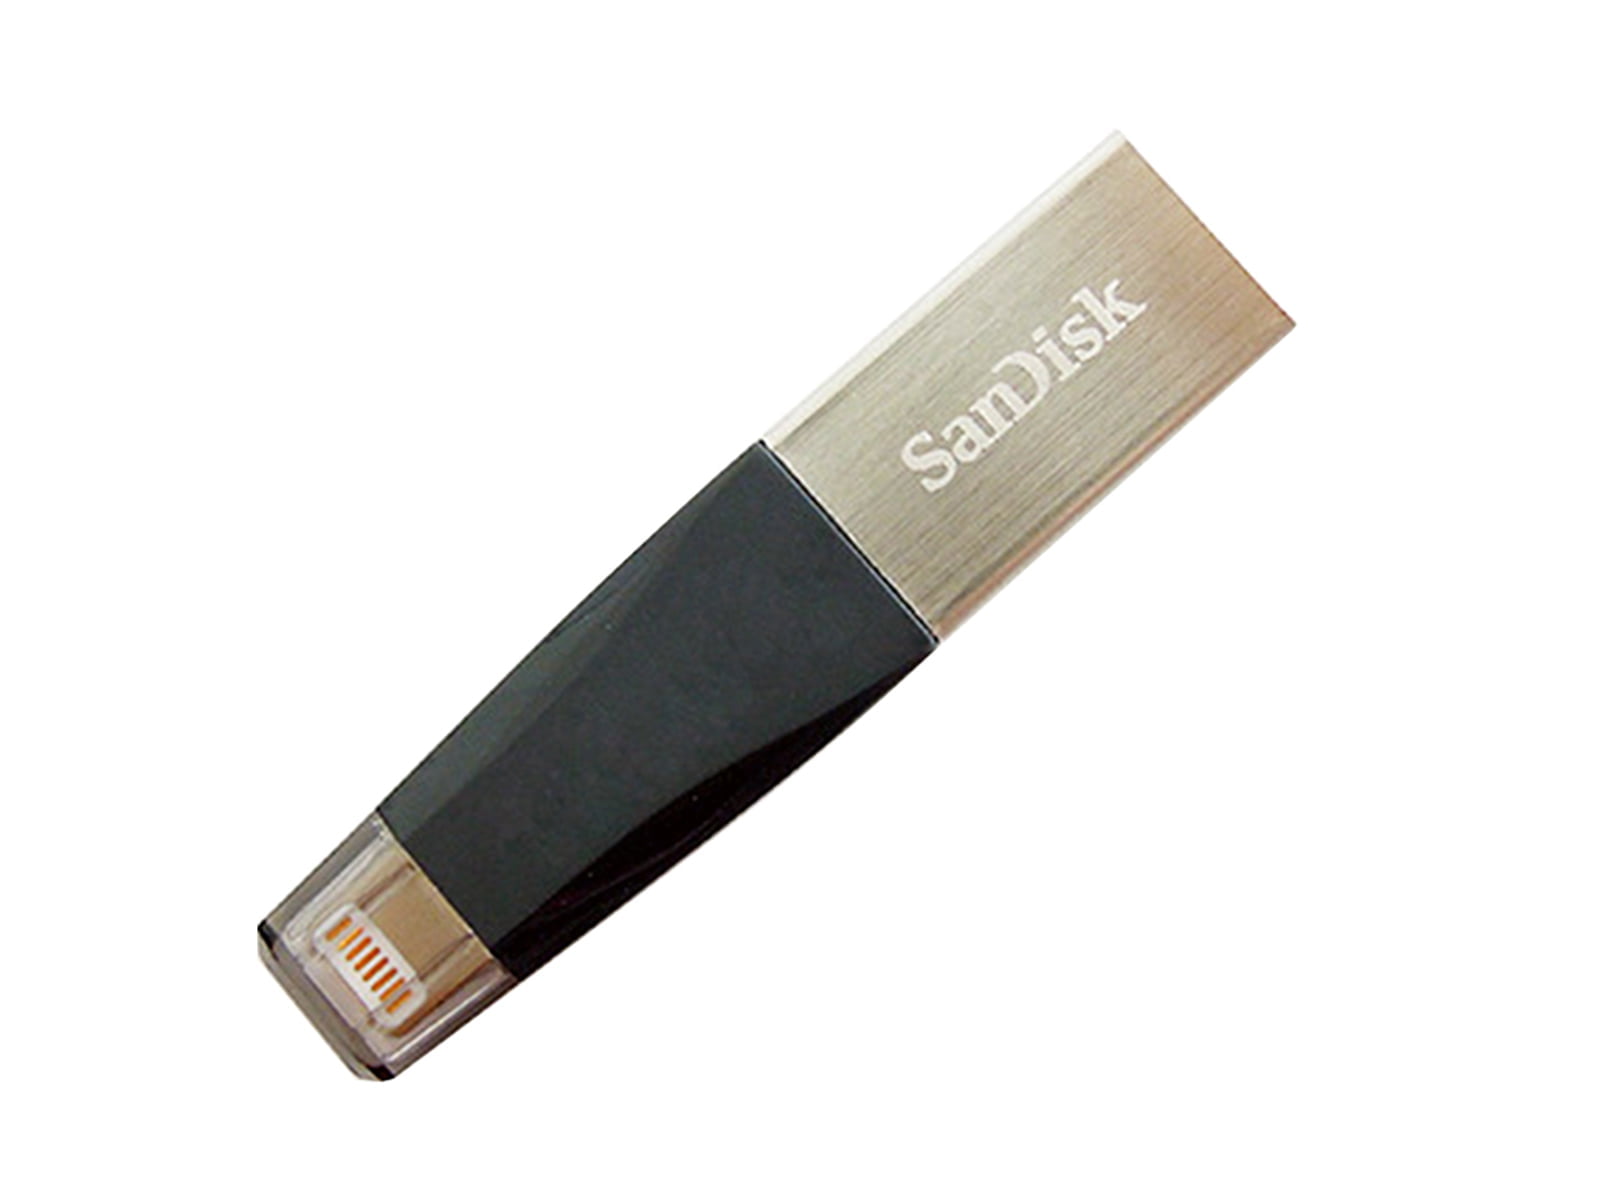 All Tesla Models_128 GB Sandisk Dashcam USB Stick - for DIRECT use